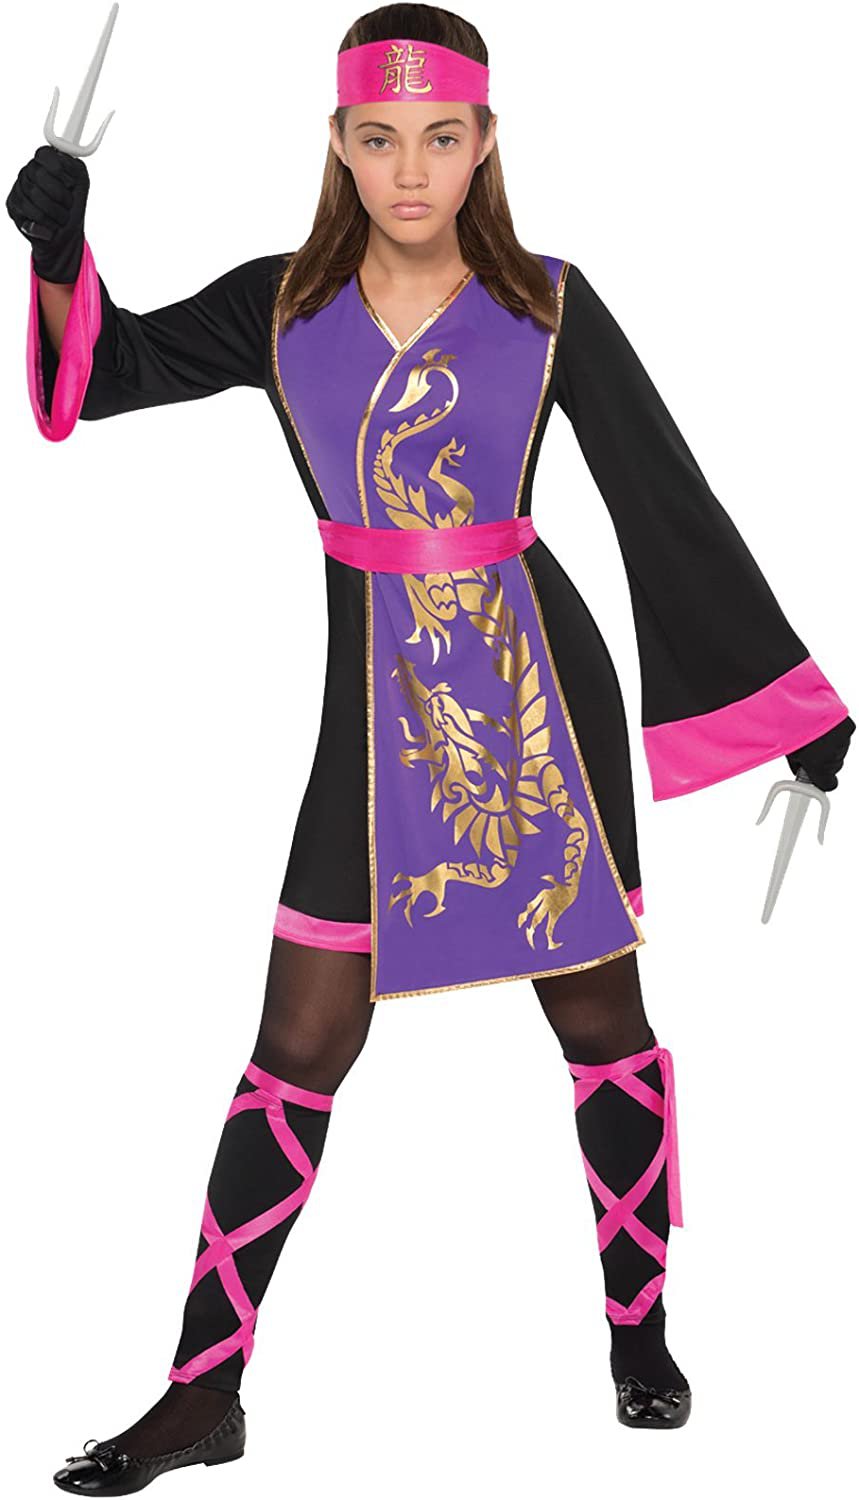 Girls Sassy Samurai Costume - X-Large (14-16) Halloween Costume